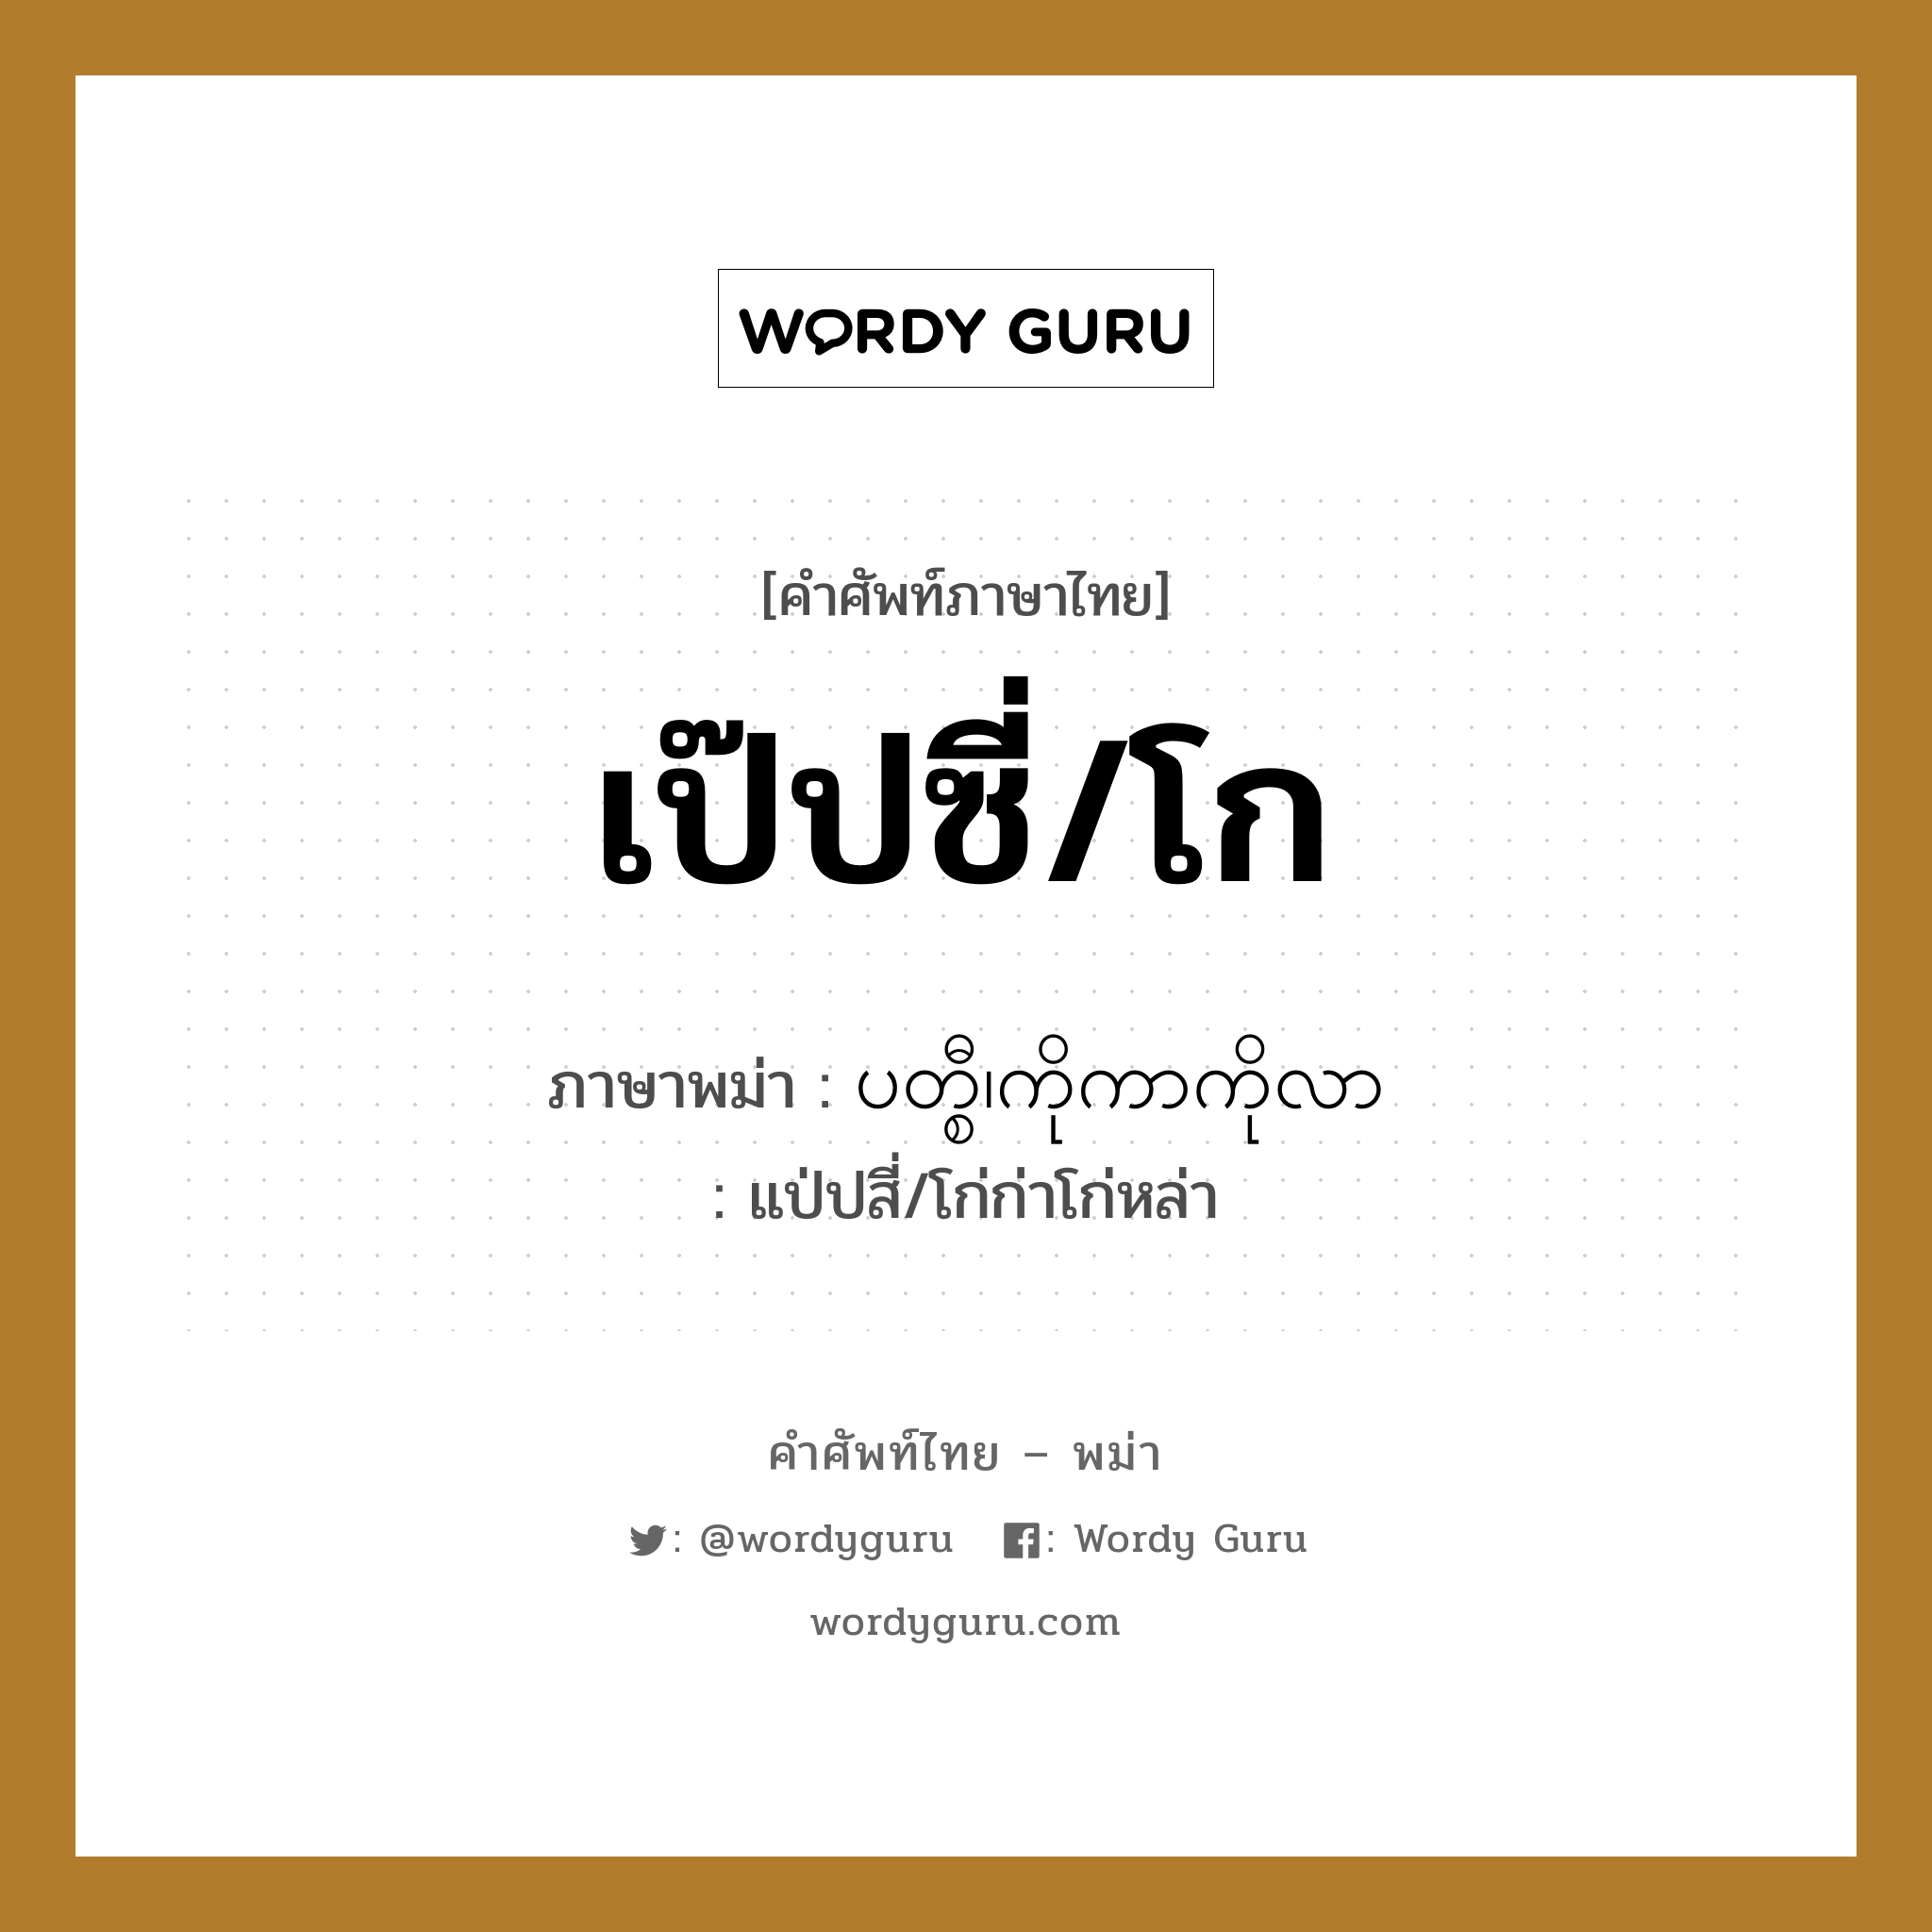 เป๊ปซี่/โก ภาษาพม่าคืออะไร, คำศัพท์ภาษาไทย - พม่า เป๊ปซี่/โก ภาษาพม่า ပတ္စီ၊ကိုကာကိုလာ หมวด หมวดเครื่องดื่ม แป่ปสี่/โก่ก่าโก่หล่า หมวด หมวดเครื่องดื่ม